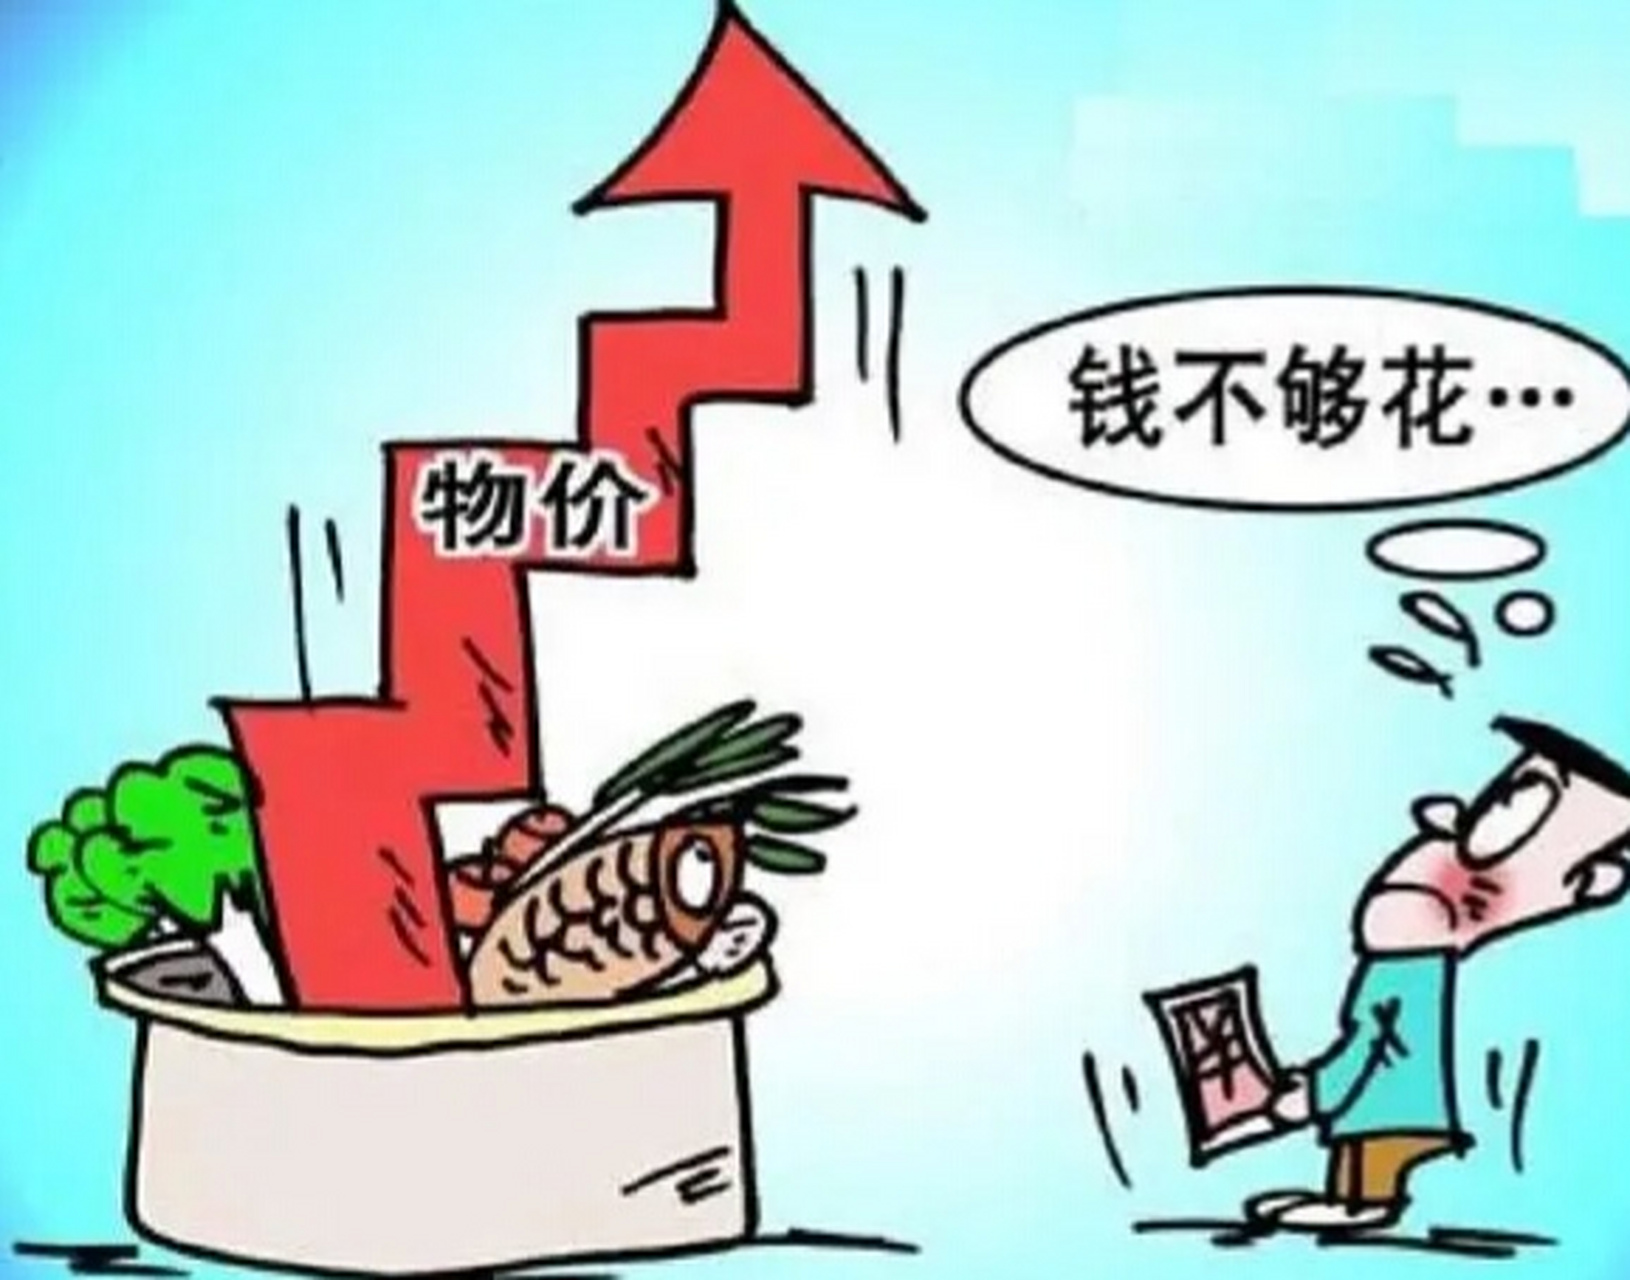 10年来中国物价上涨图图片